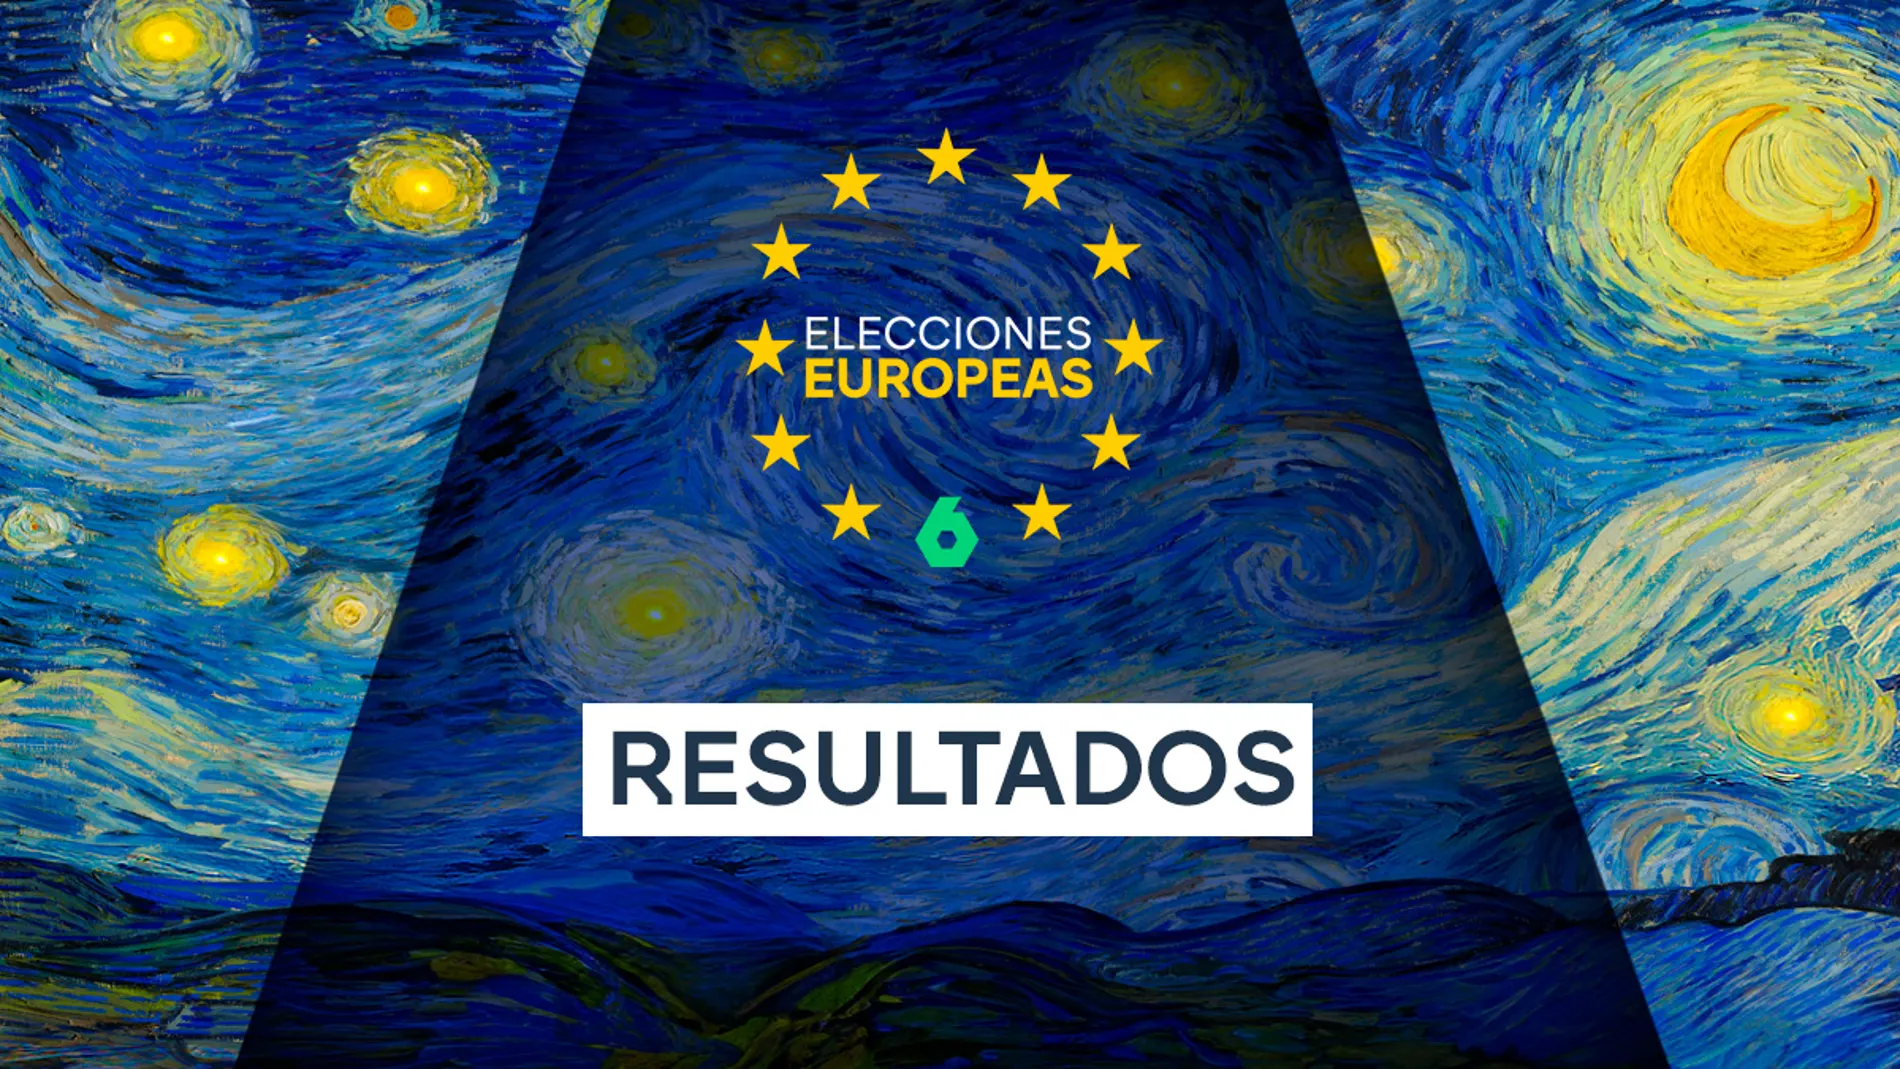 Consulta los resultados de las elecciones europeas, datos de participación y partido más votado en España